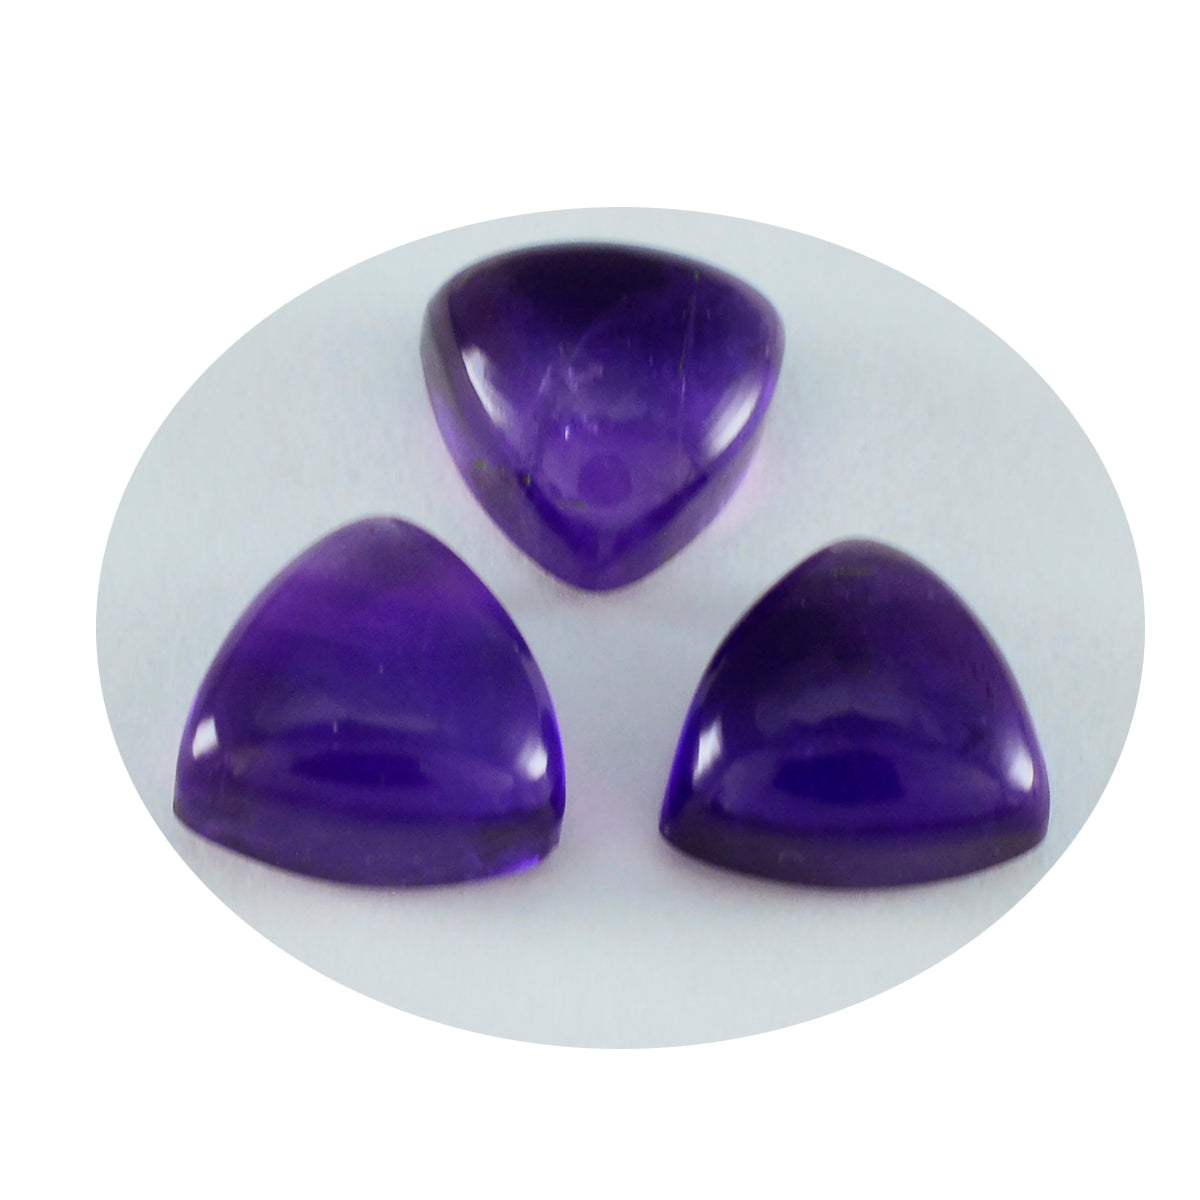 riyogems 1pc cabochon d'améthyste violet 8x8 mm forme trillion merveilleuse qualité pierre précieuse en vrac